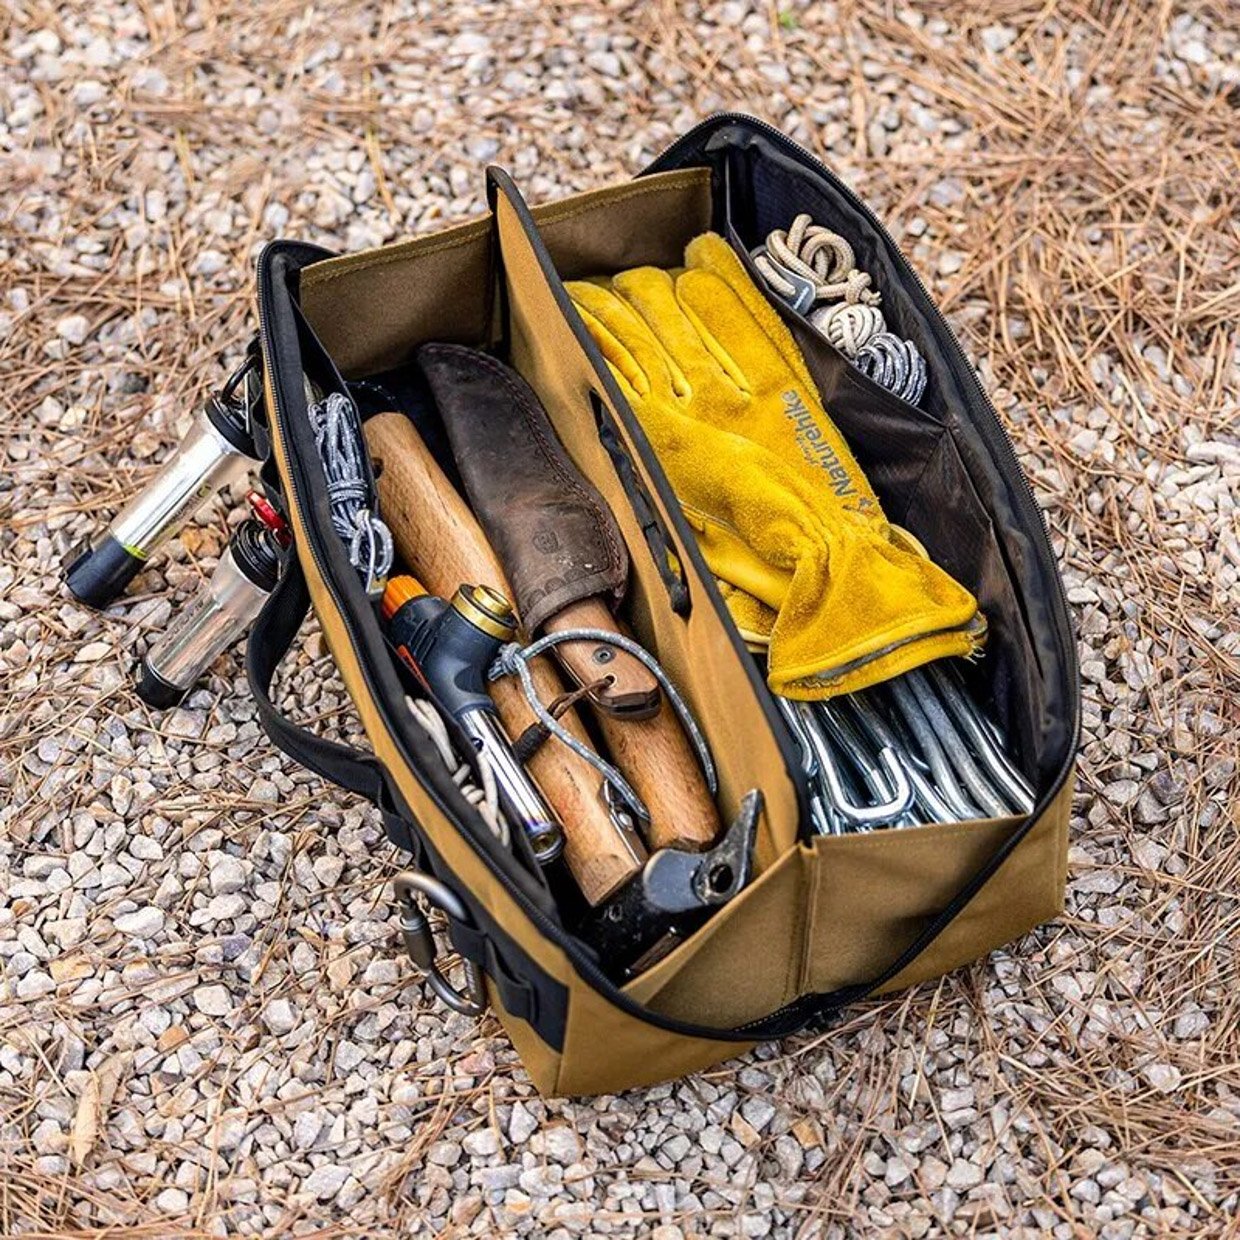 Mountaq WetProof Campsite Tool Bag